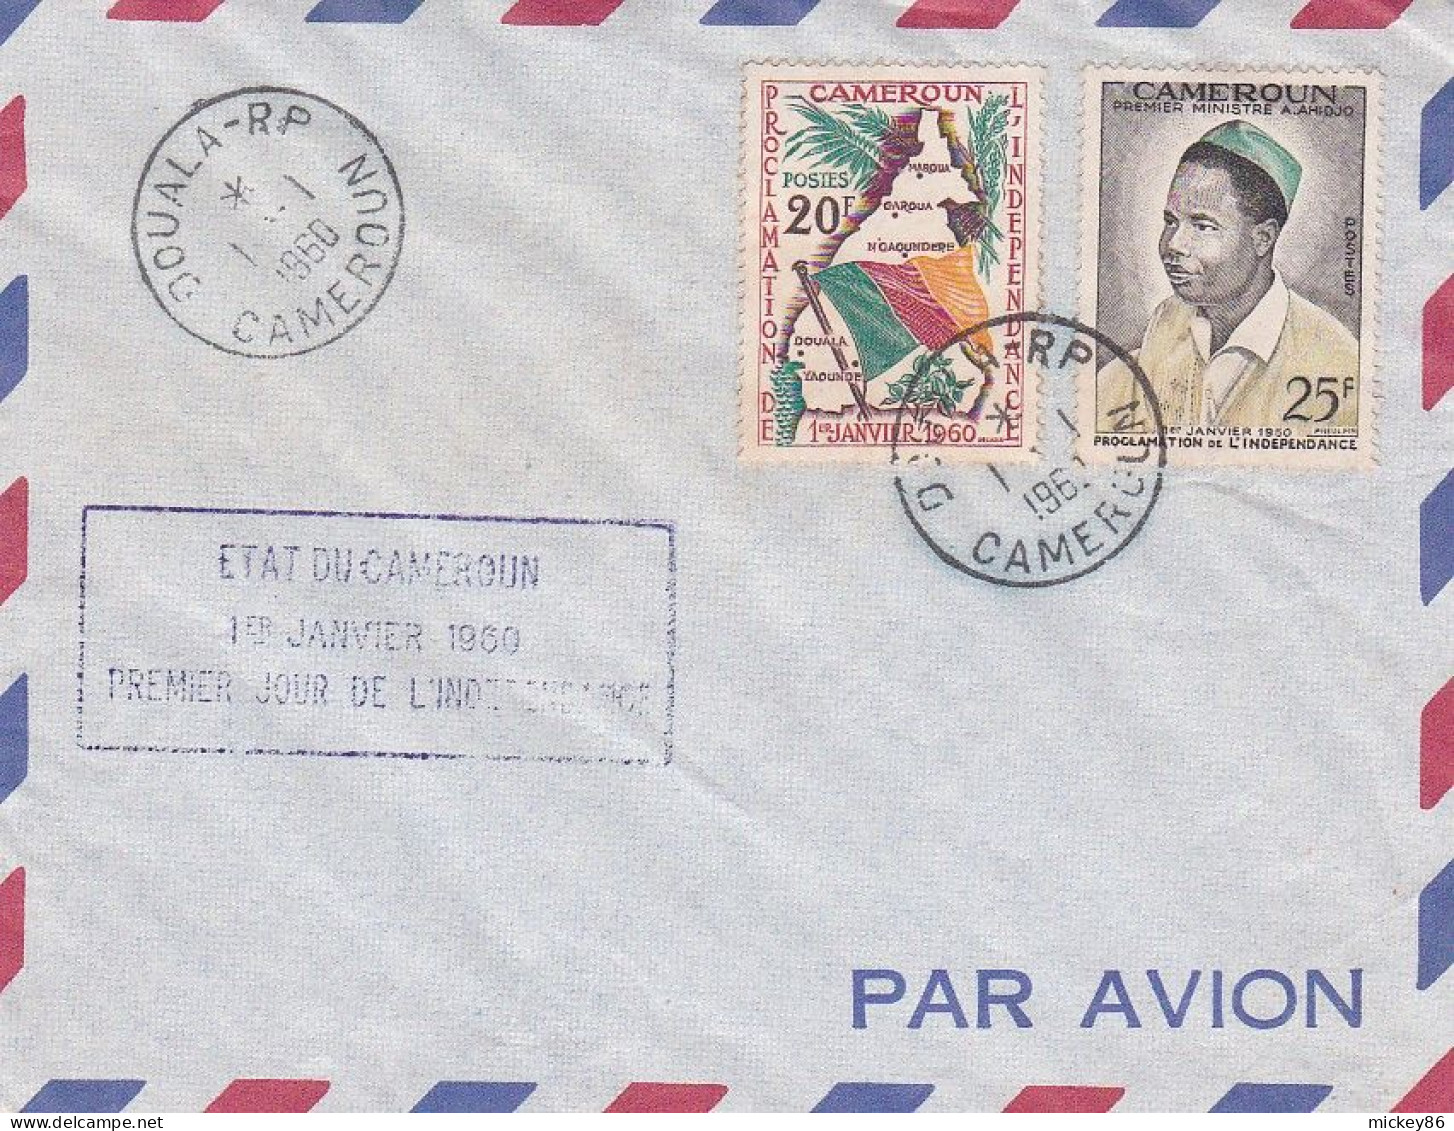 Cameroun --1960 - Lettre De DOUALA R.P -- Cachet Du 1-1-1960 --1er Jour De L'Indépendance -- Timbres--cachet - Cameroun (1960-...)